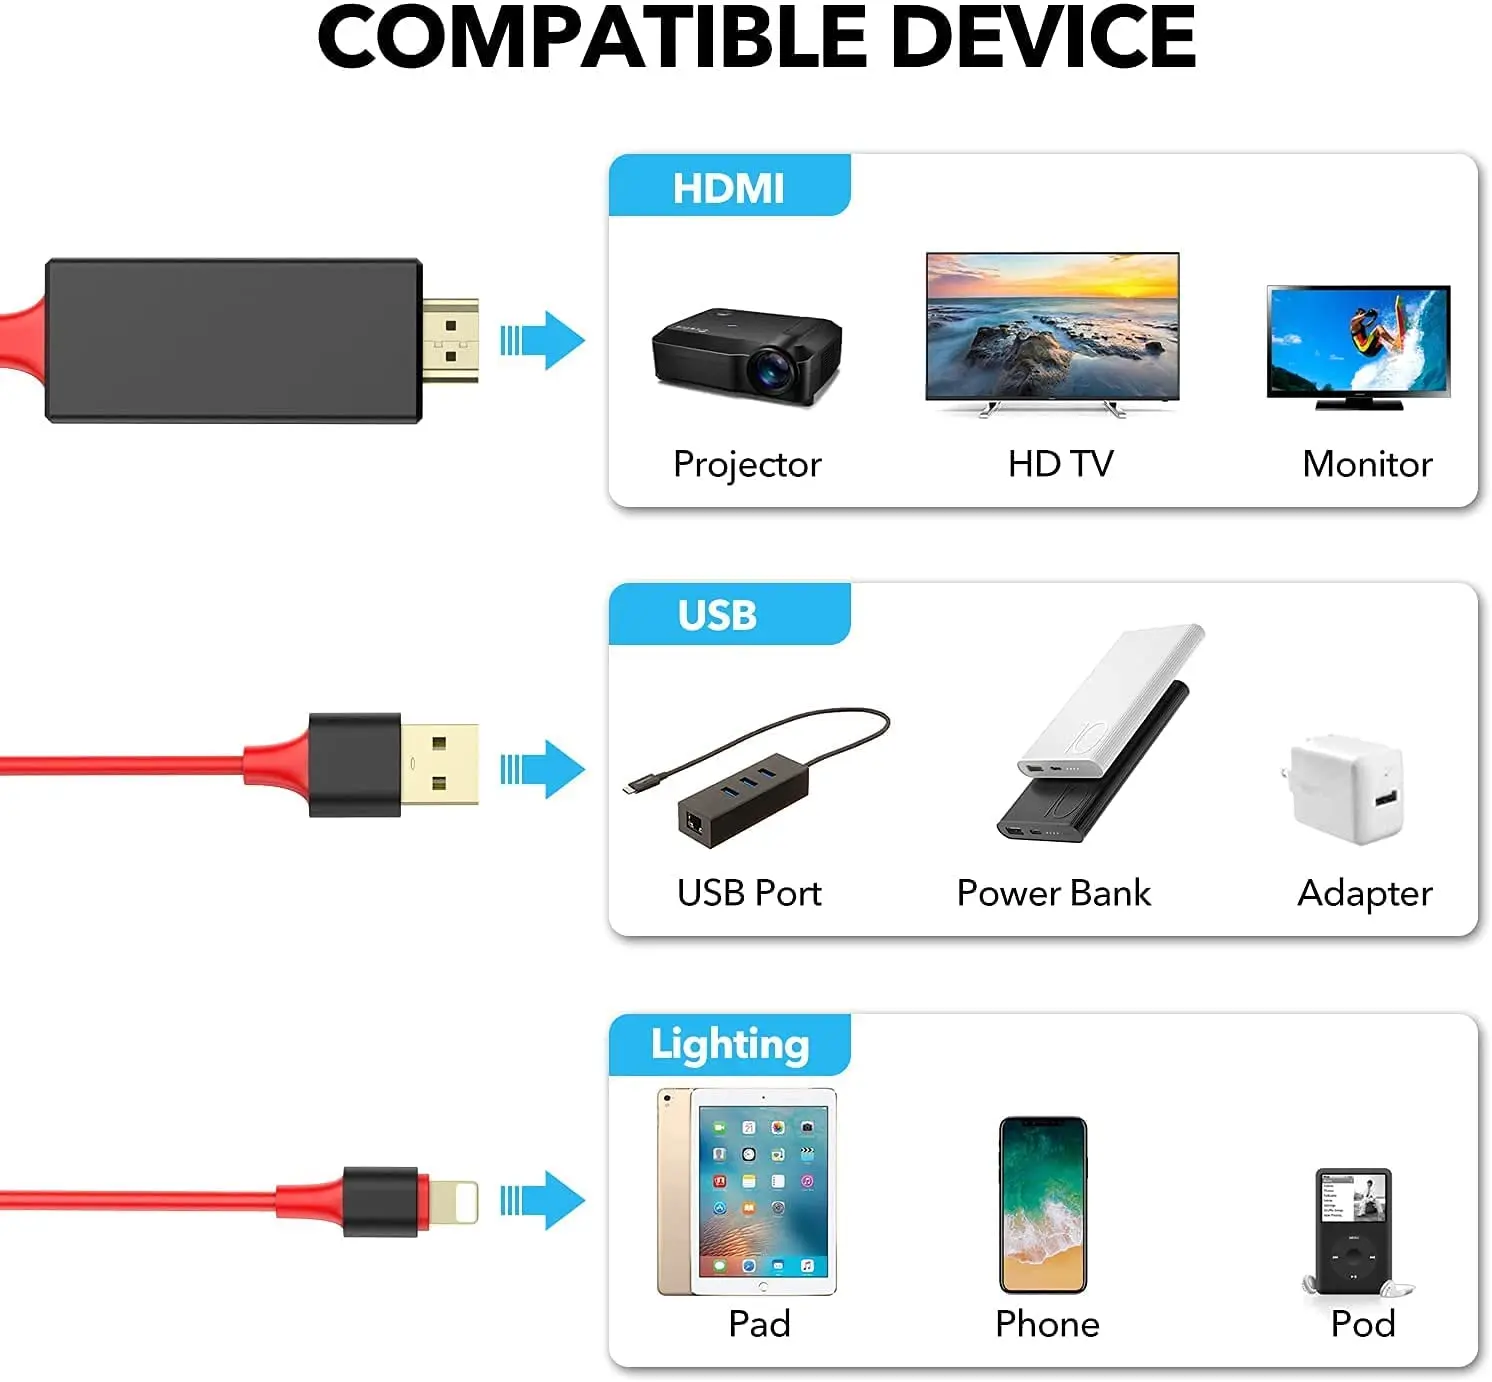 pentru Cablu Adaptor HDMI 2M HDMI 1080P Sincronizare Ecran Digital TV HD Adaptor Cablu Convertor pentru iPhone IOS, pentru HDTV/Proiector cumpara / alte \